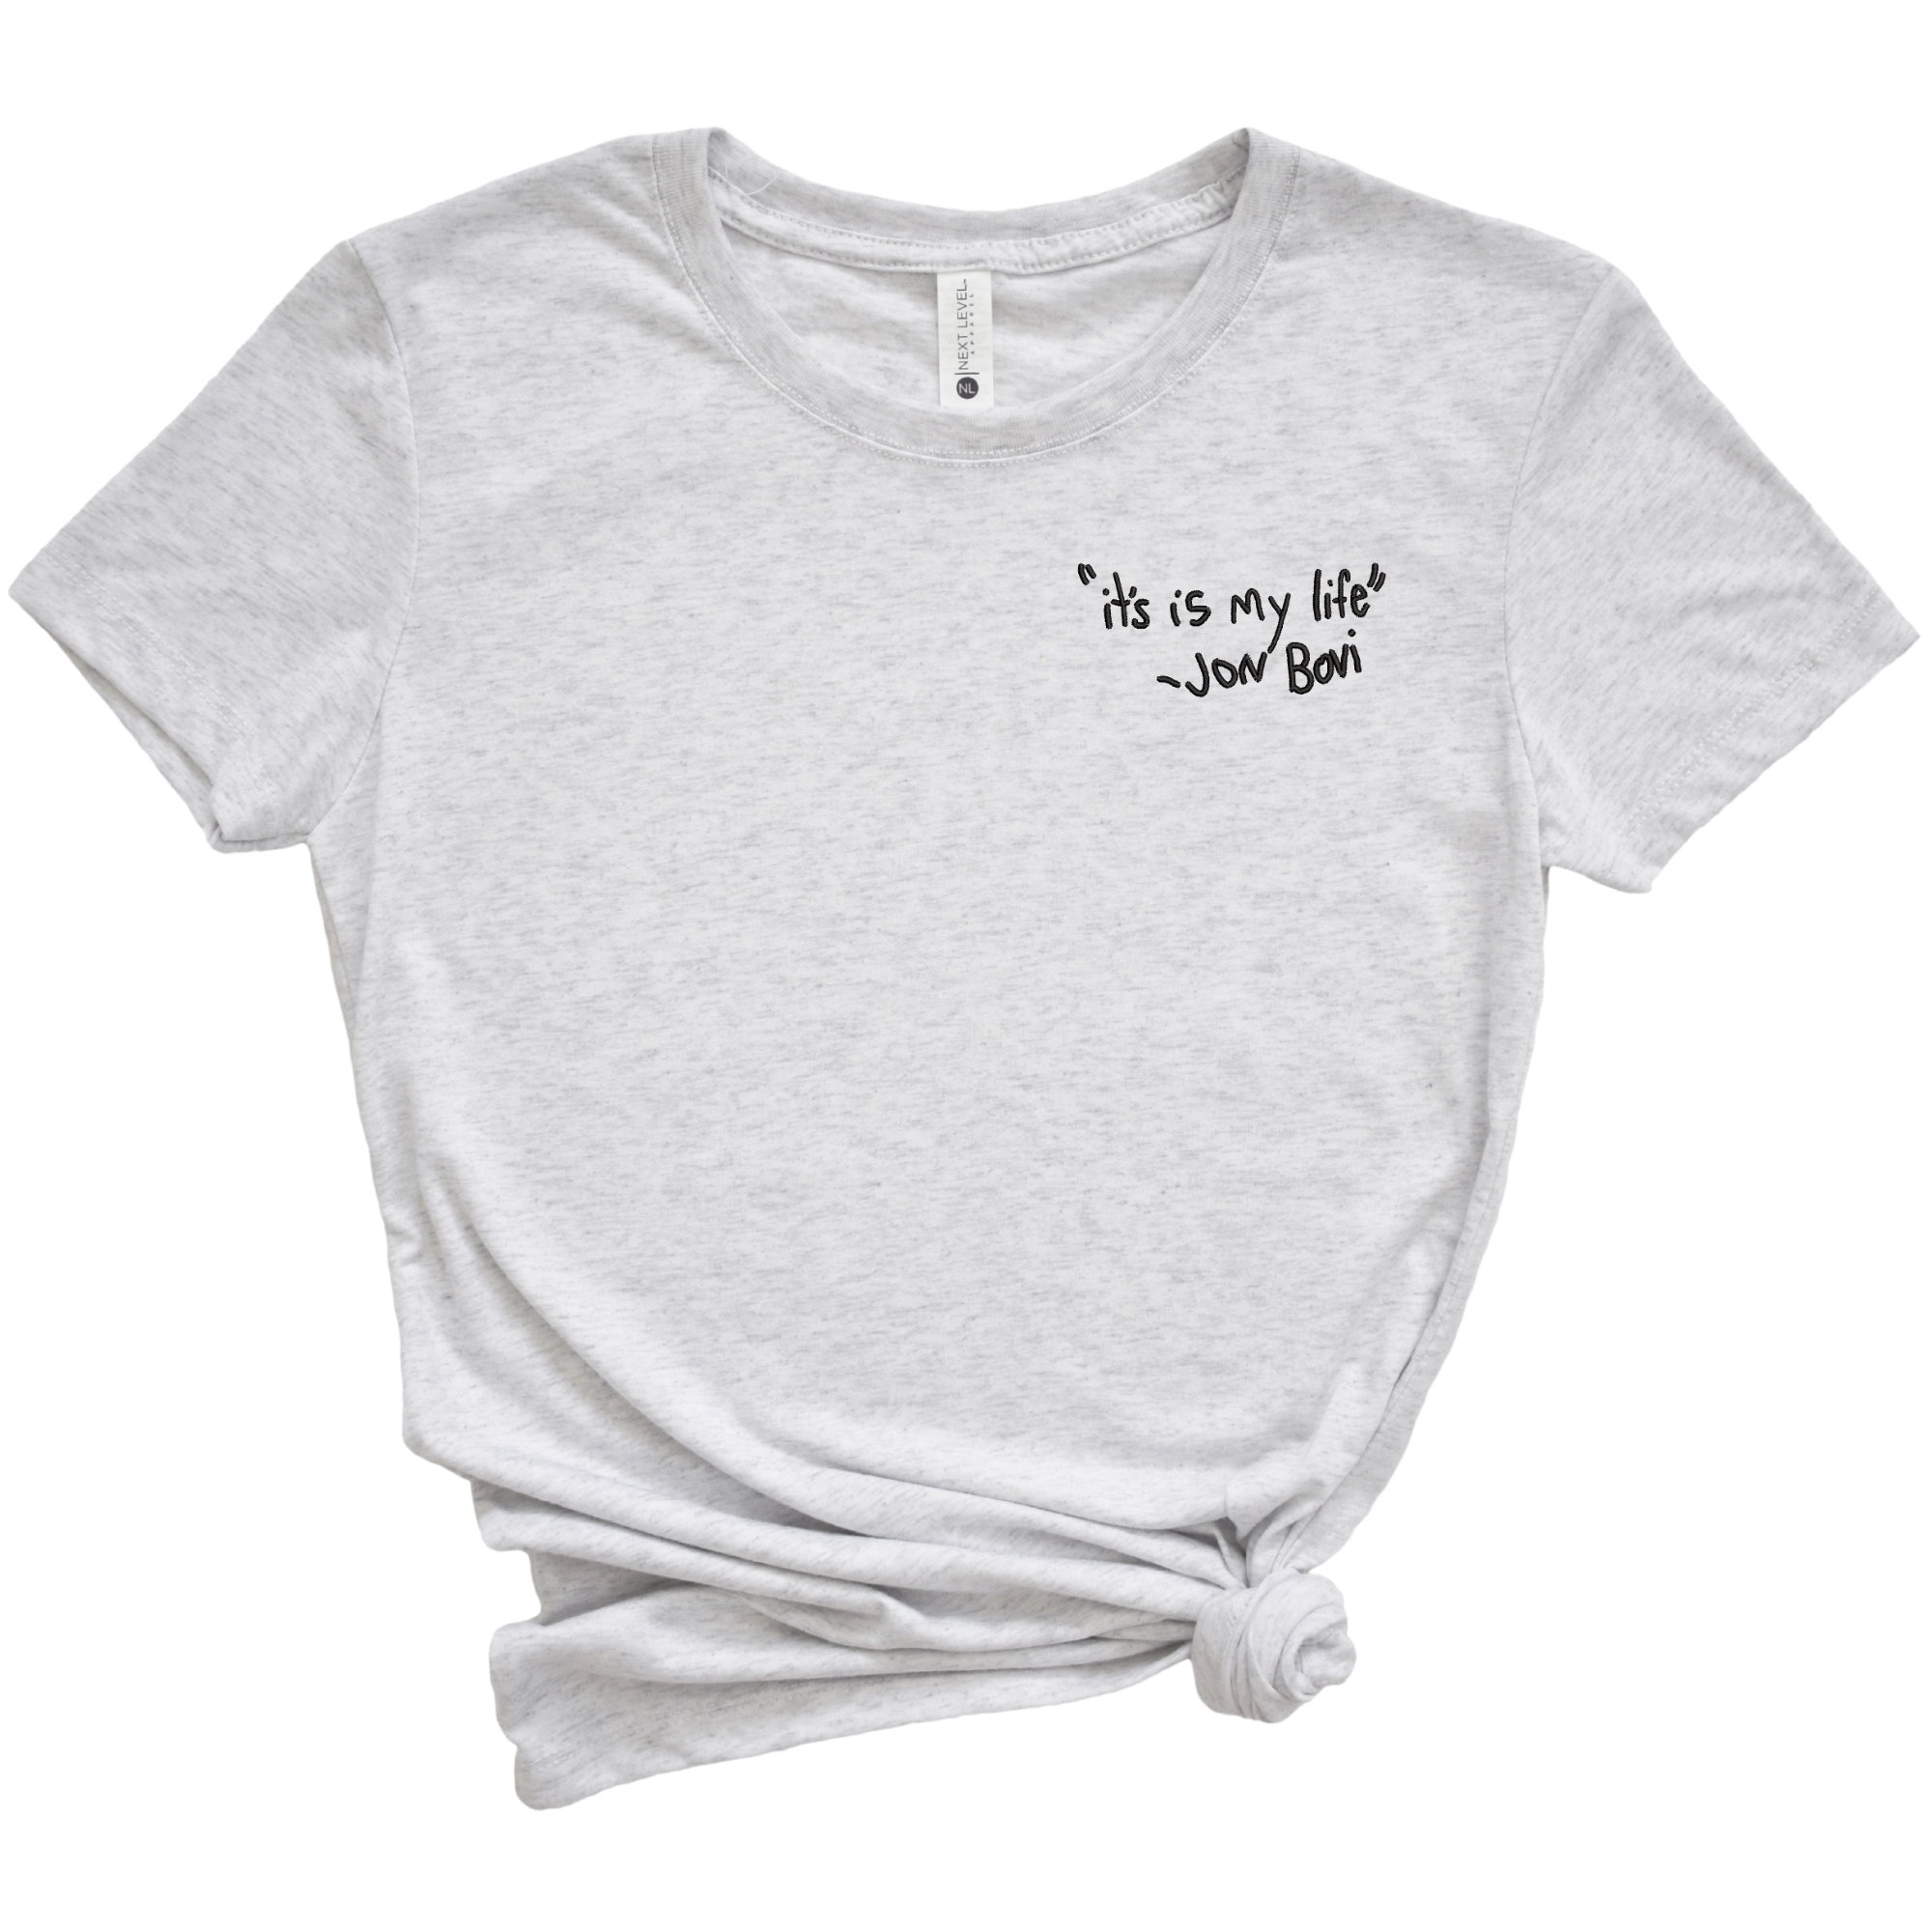 It's Is My Life Jon Bovi Bon Jovi Embroidered Tee Shirt, Unisex